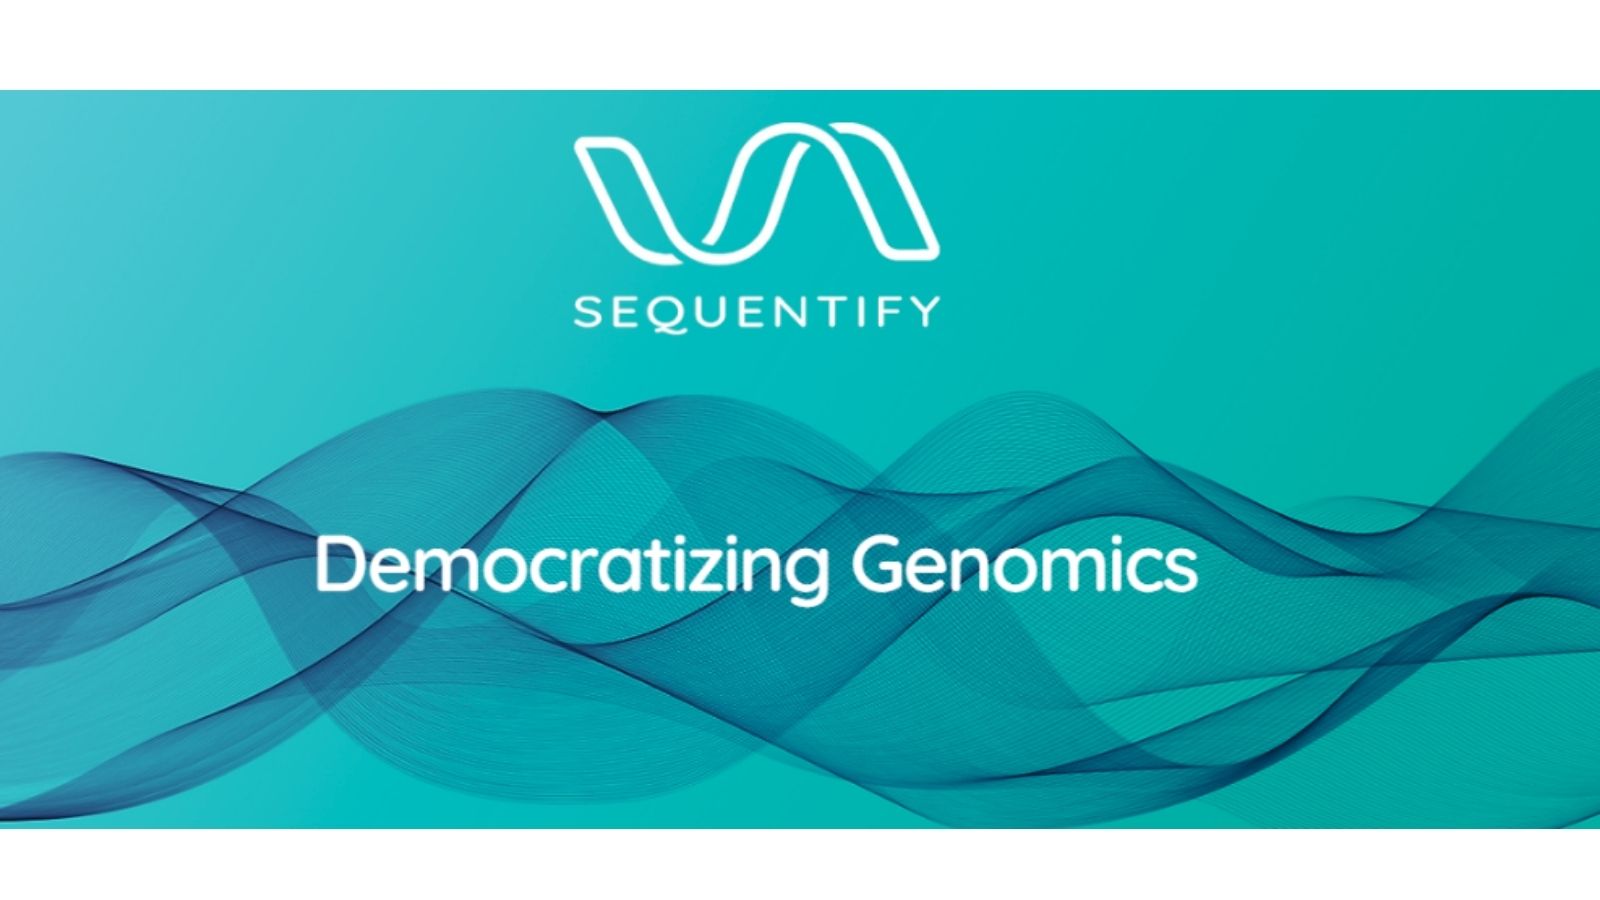 Sequentify 为下一代测序、基因组诊断和治疗开发样品处理技术和解决方案